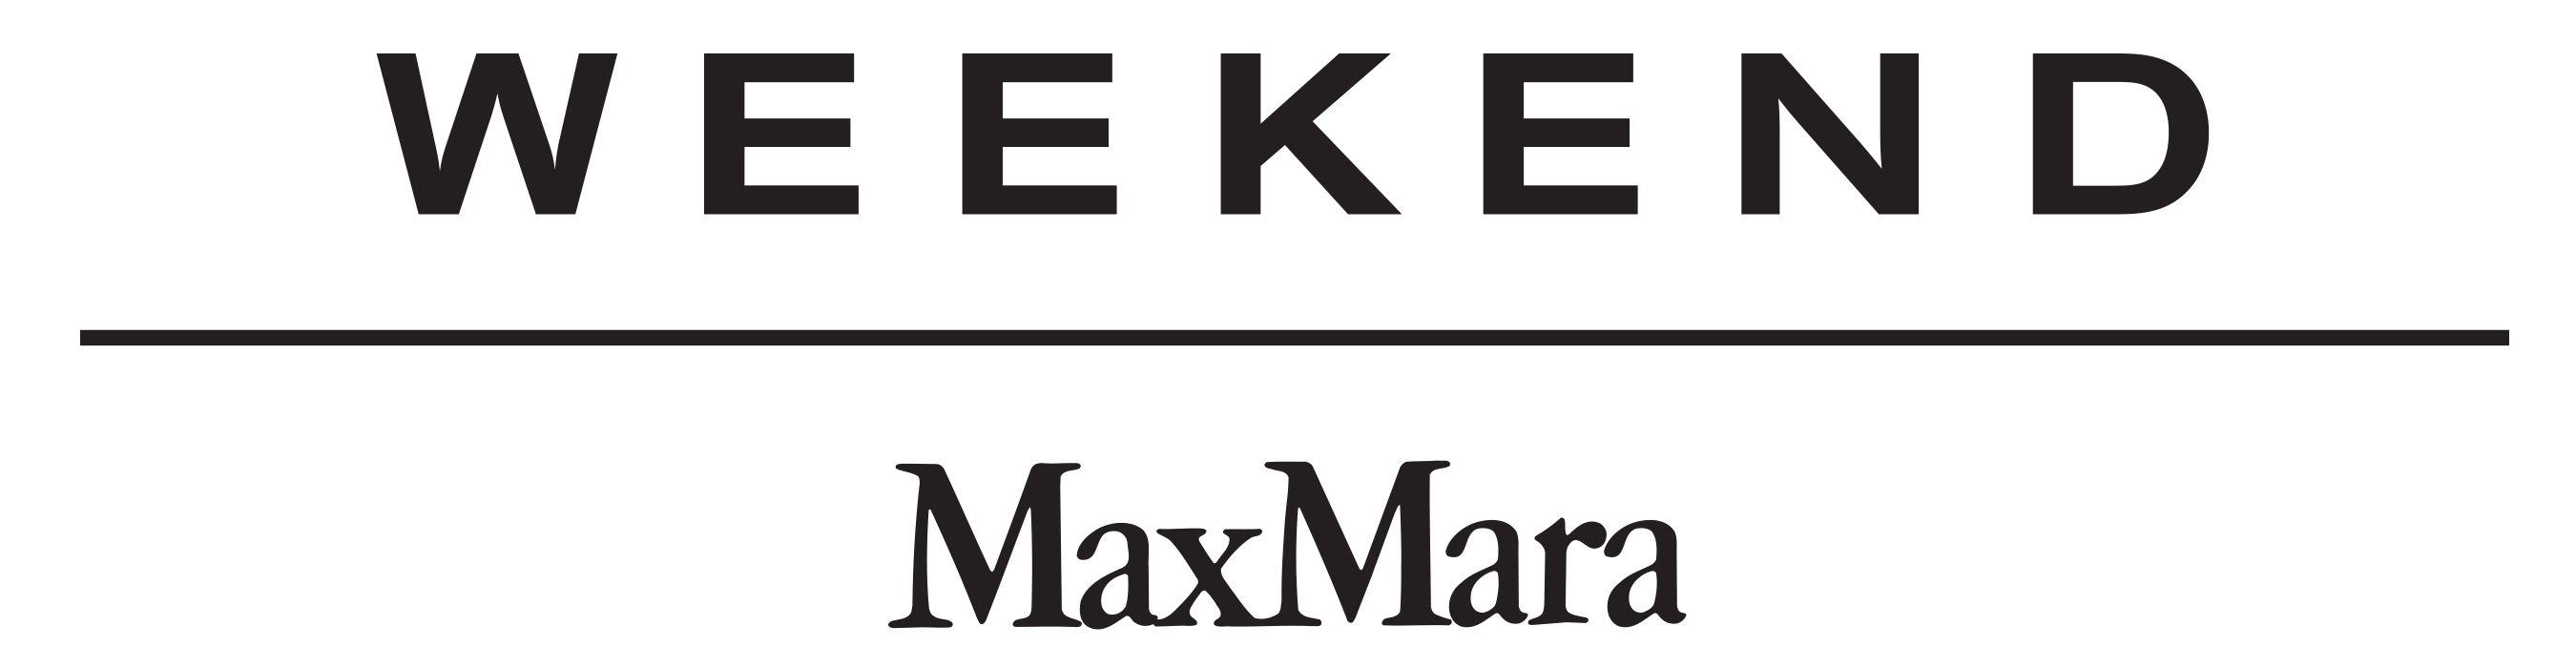 Max Mara Logo - LogoDix